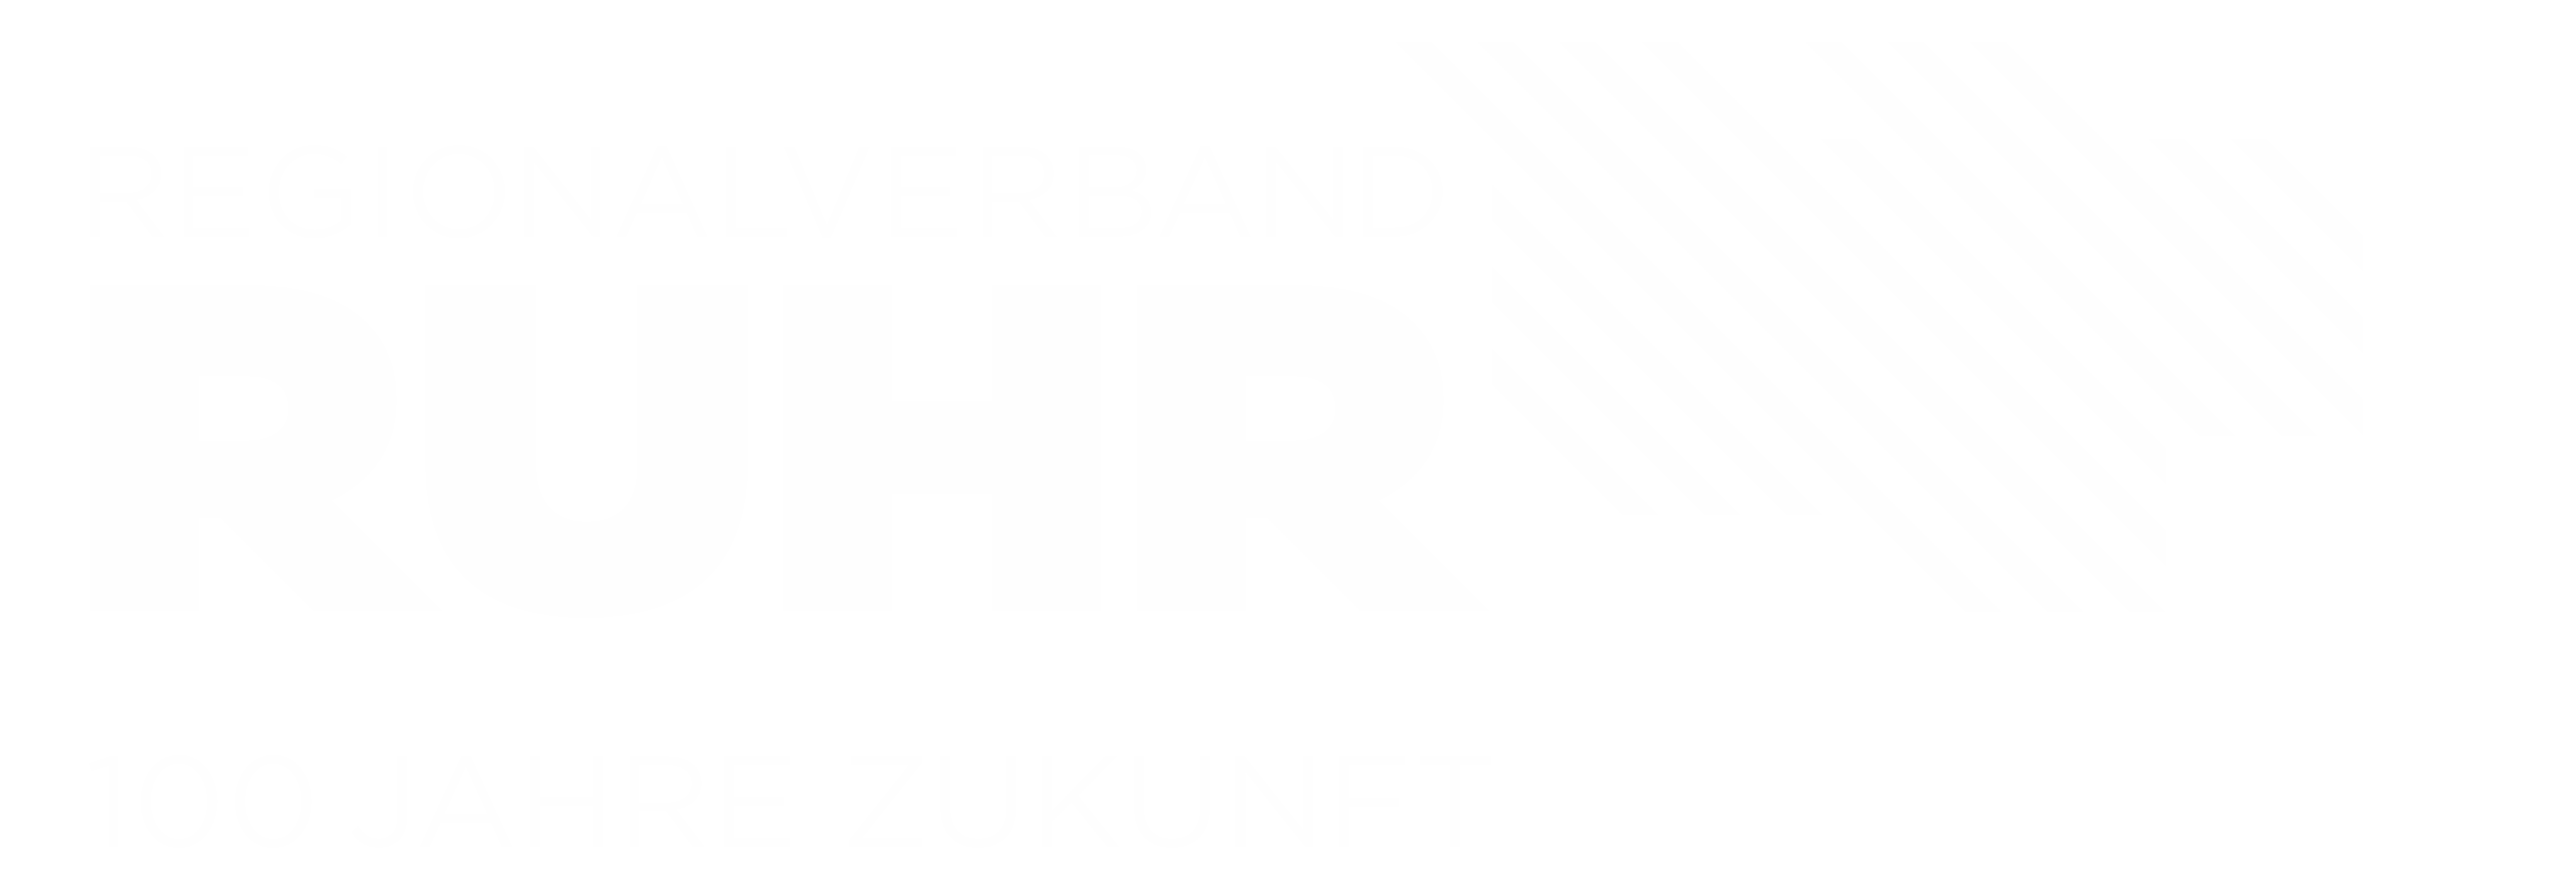 Logo "100 Jahre Regionalverband Ruhr" zum Jubiläum 2020.